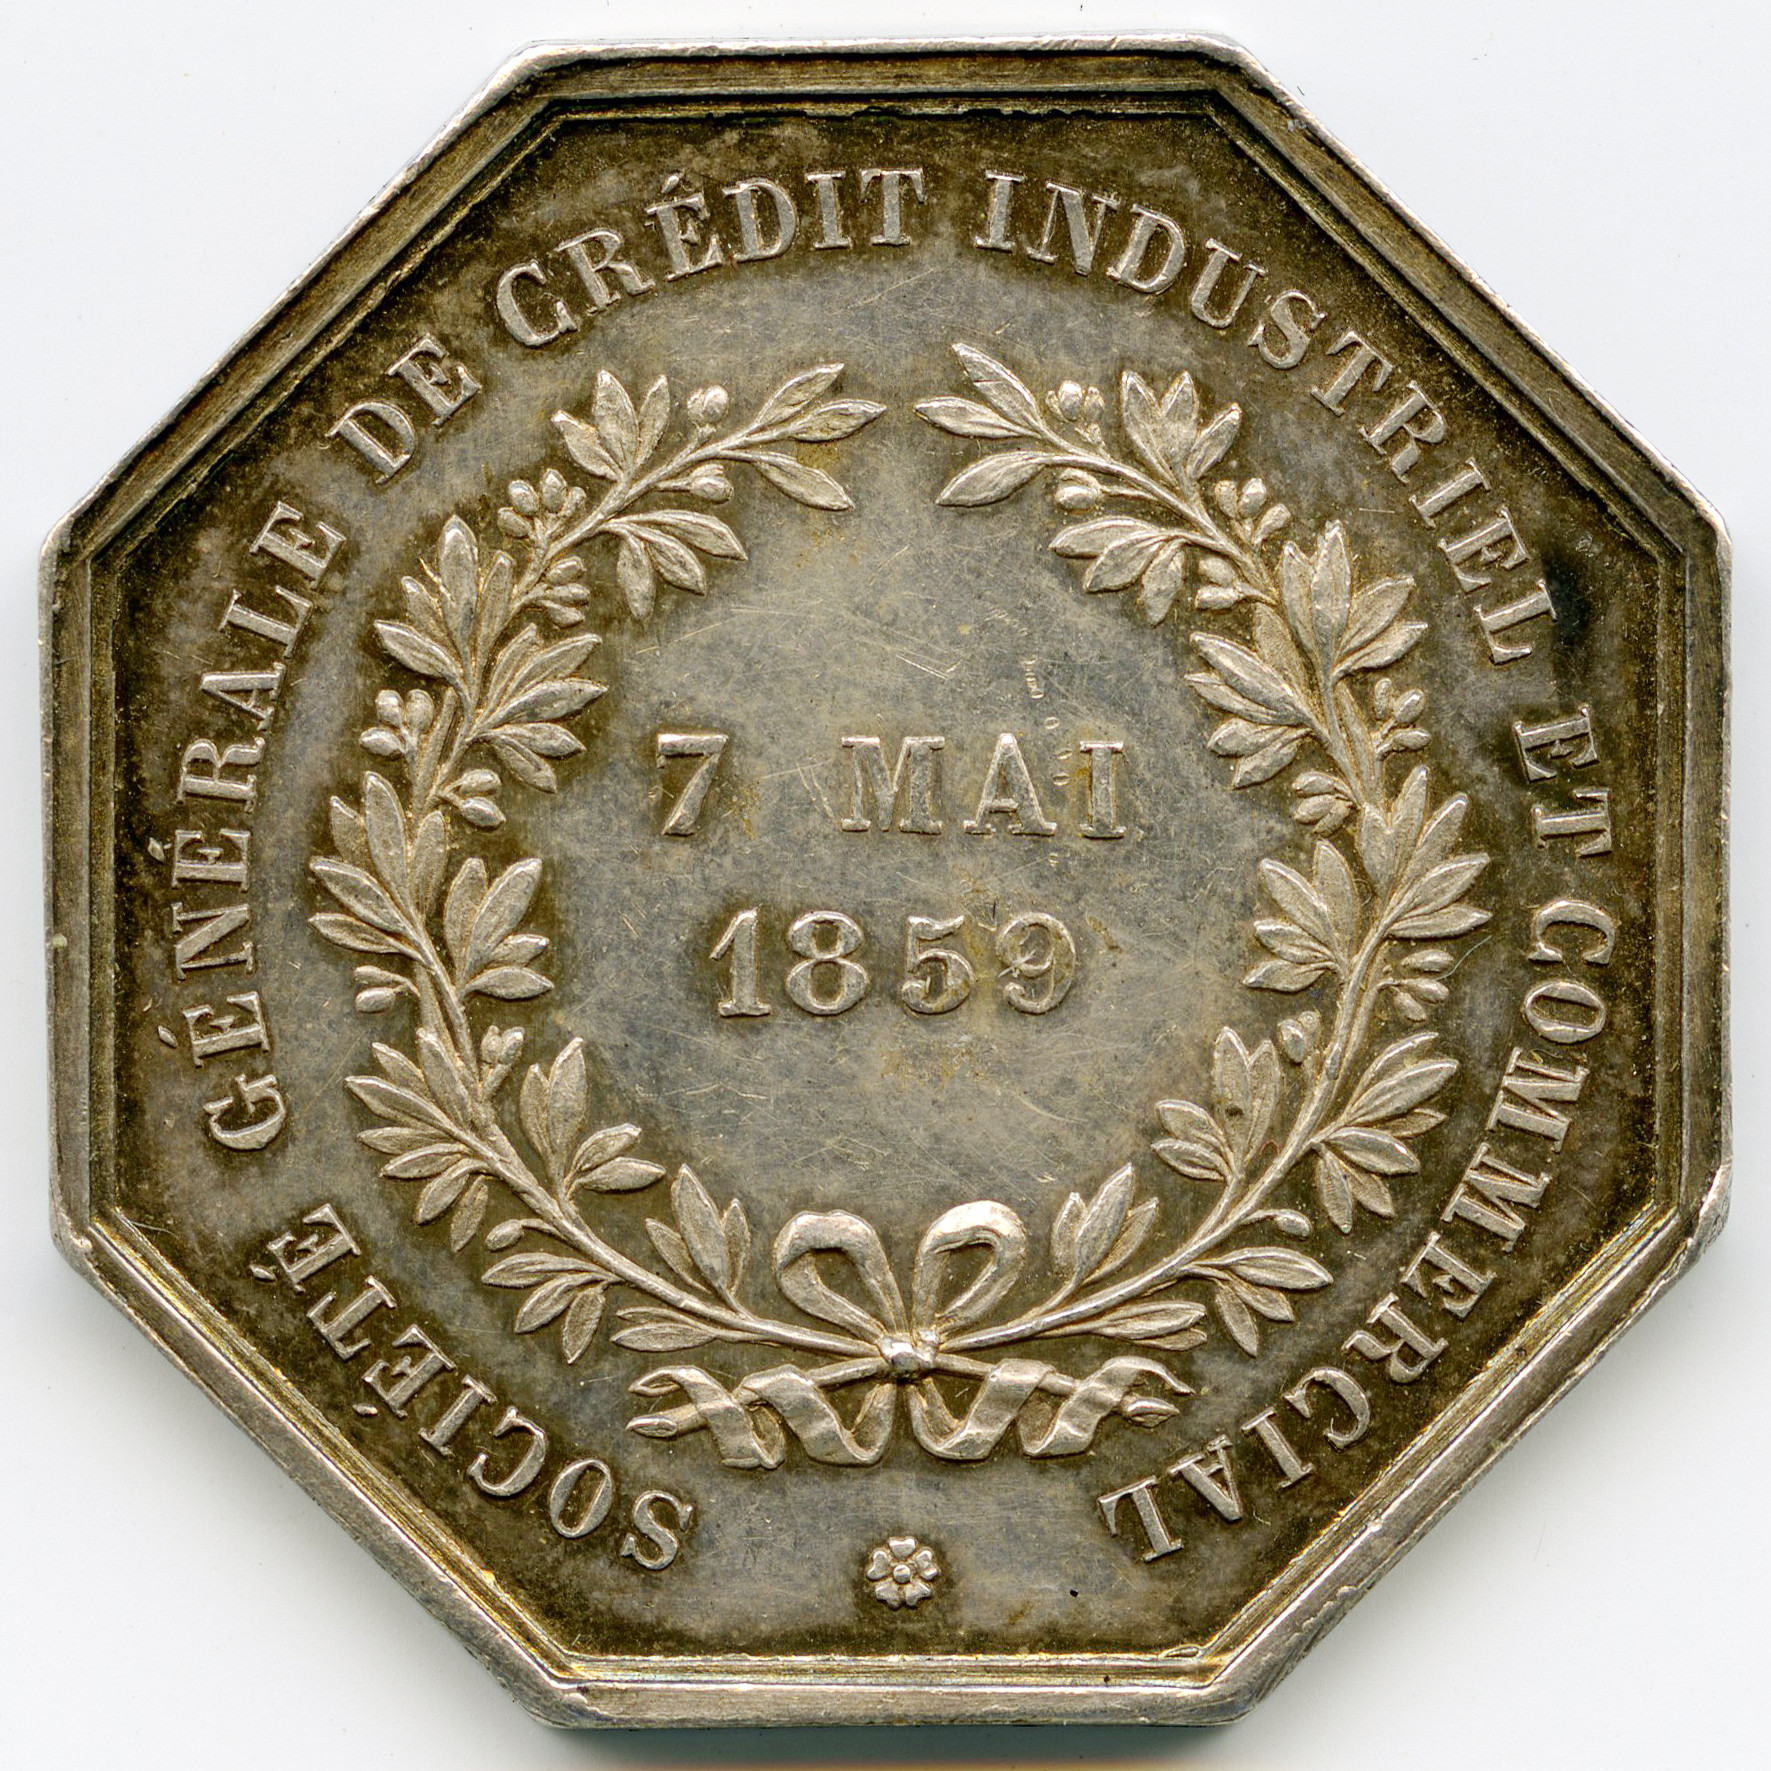 Jeton - Banques - Etablissement de crédit - 1859 revers